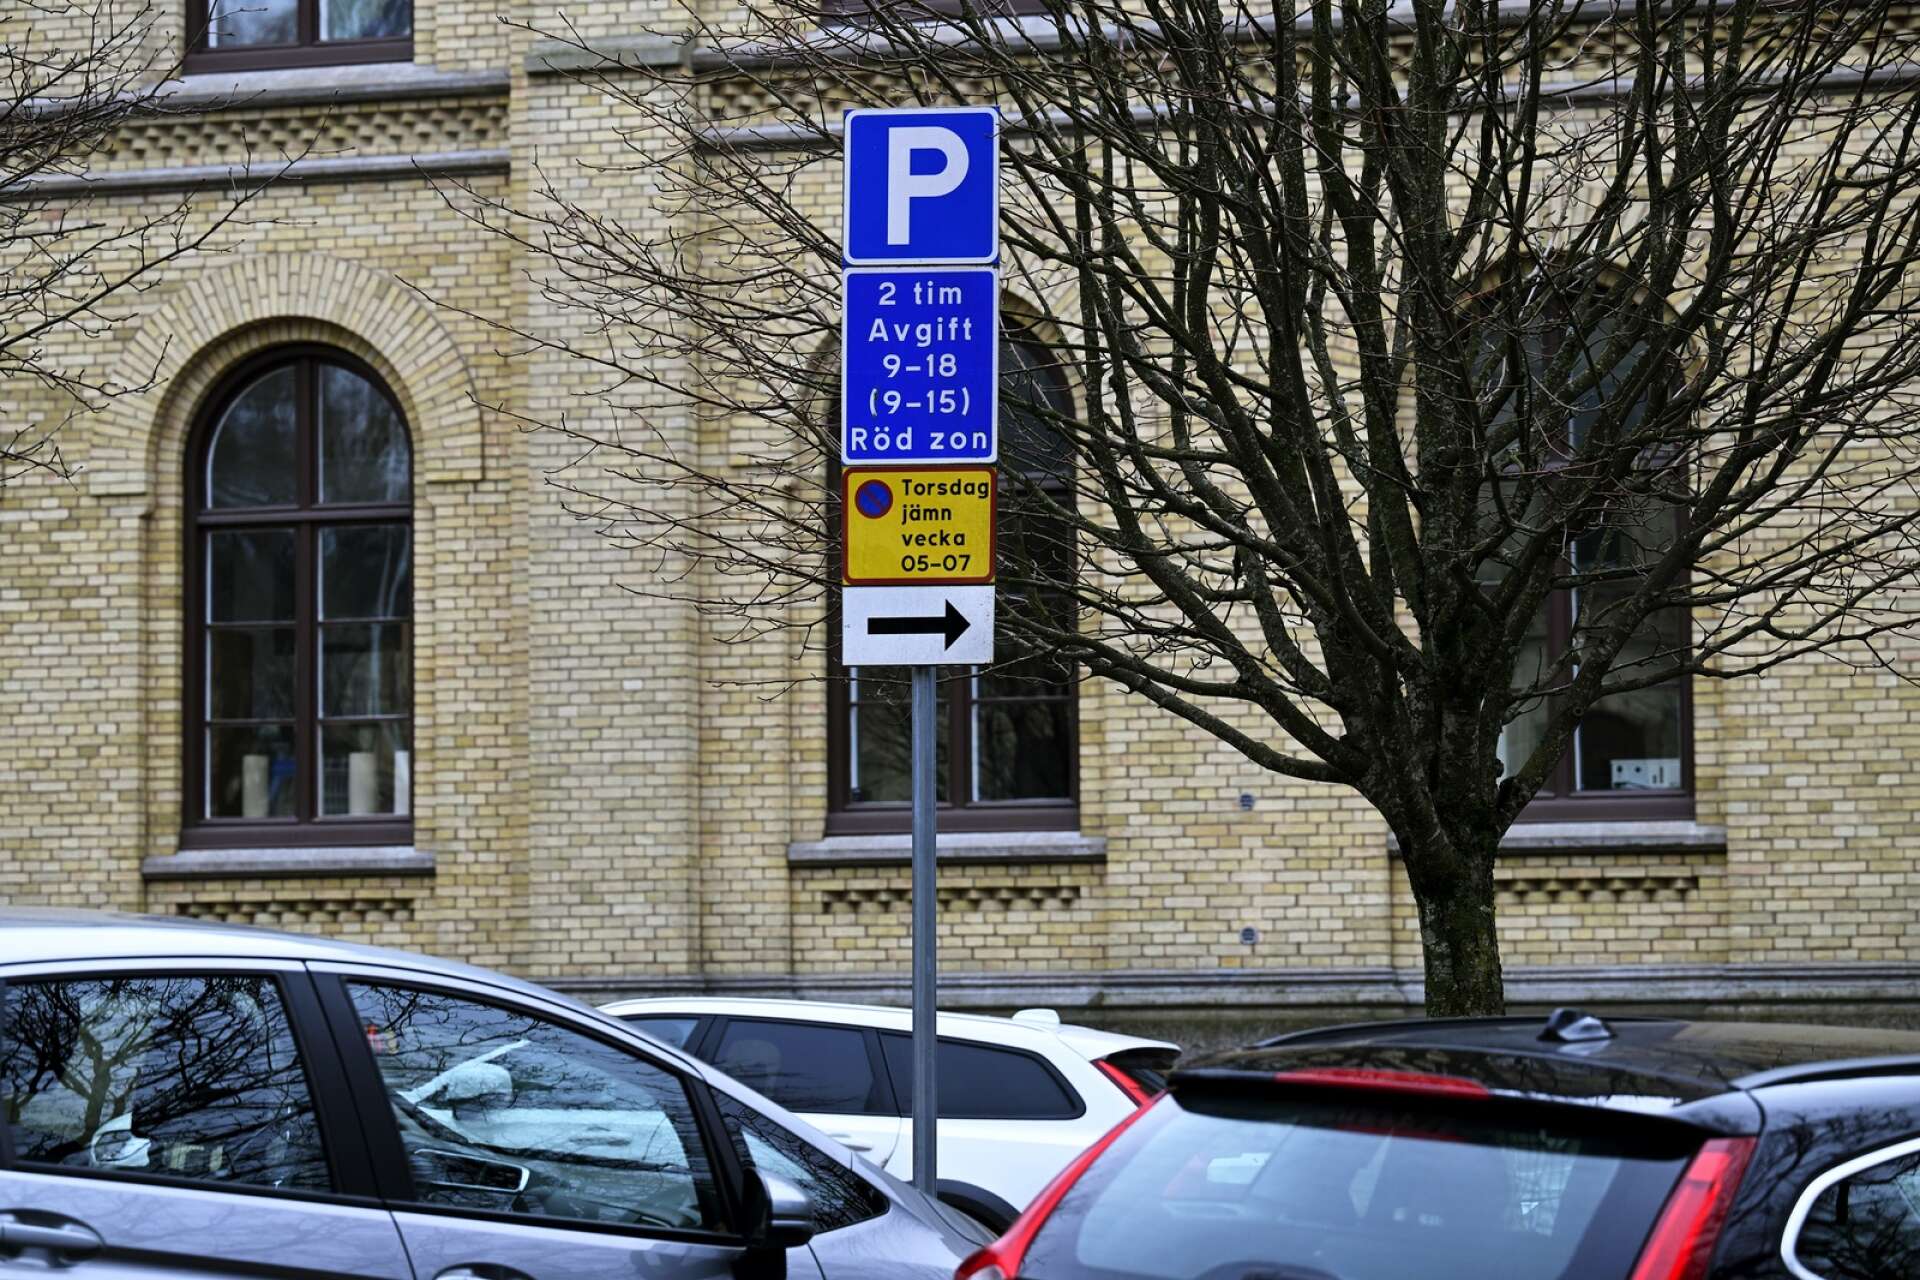 Karlstads kommun har tagit fram en parkeringsplan som är ute på remiss och väntas antas i höst. Korttidsparkering är en av frågorna som behandlas i dokumentet.